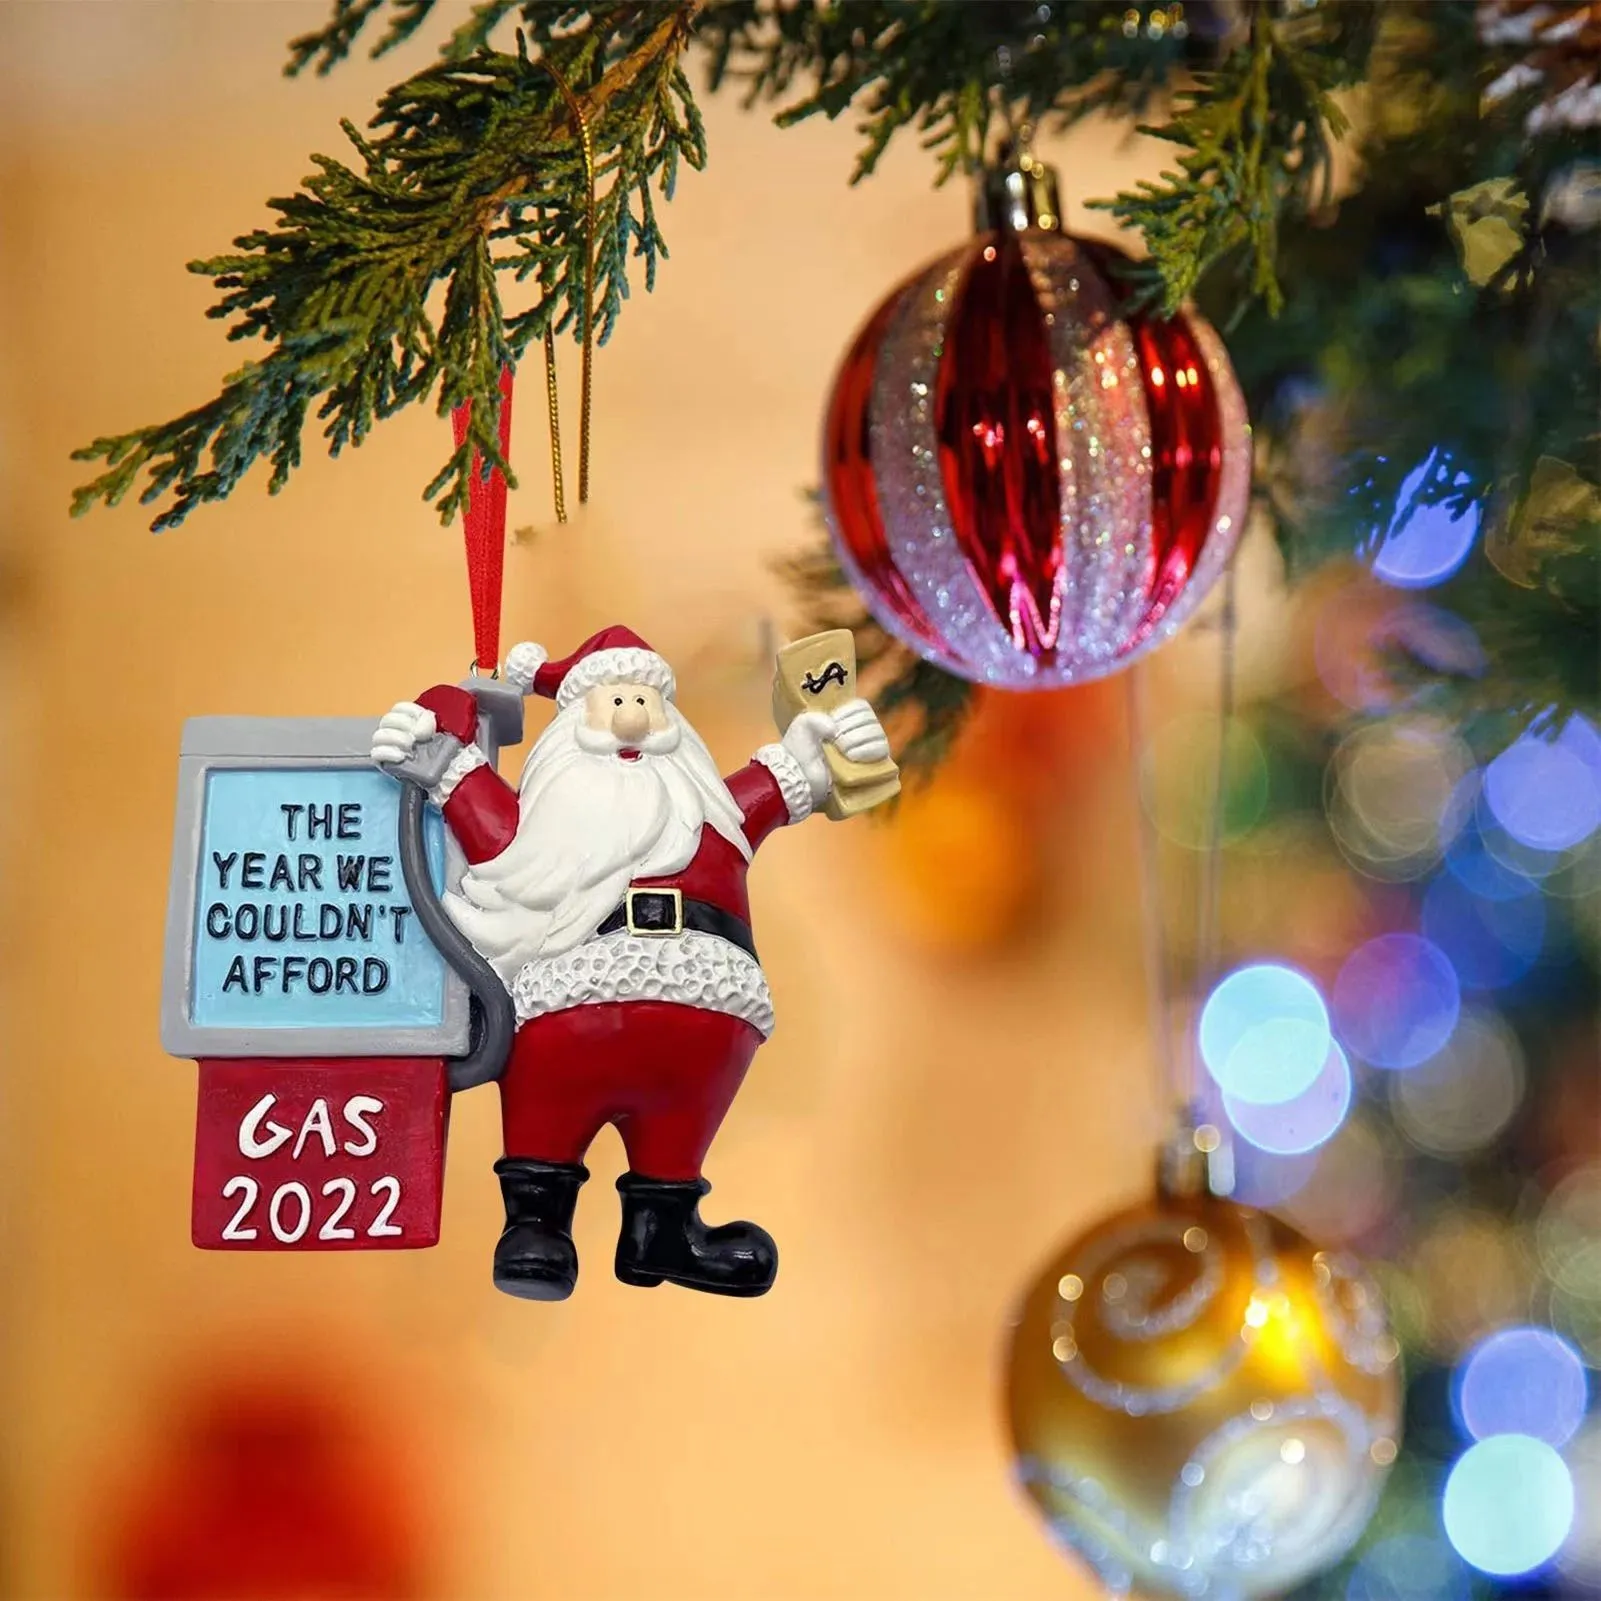 Kerstspeelgoed Grappig Xmas Santa Claus ornamenten het jaar dat we ons geen gas nieuwjaarsboom konden veroorloven hangende hangerse decoratie